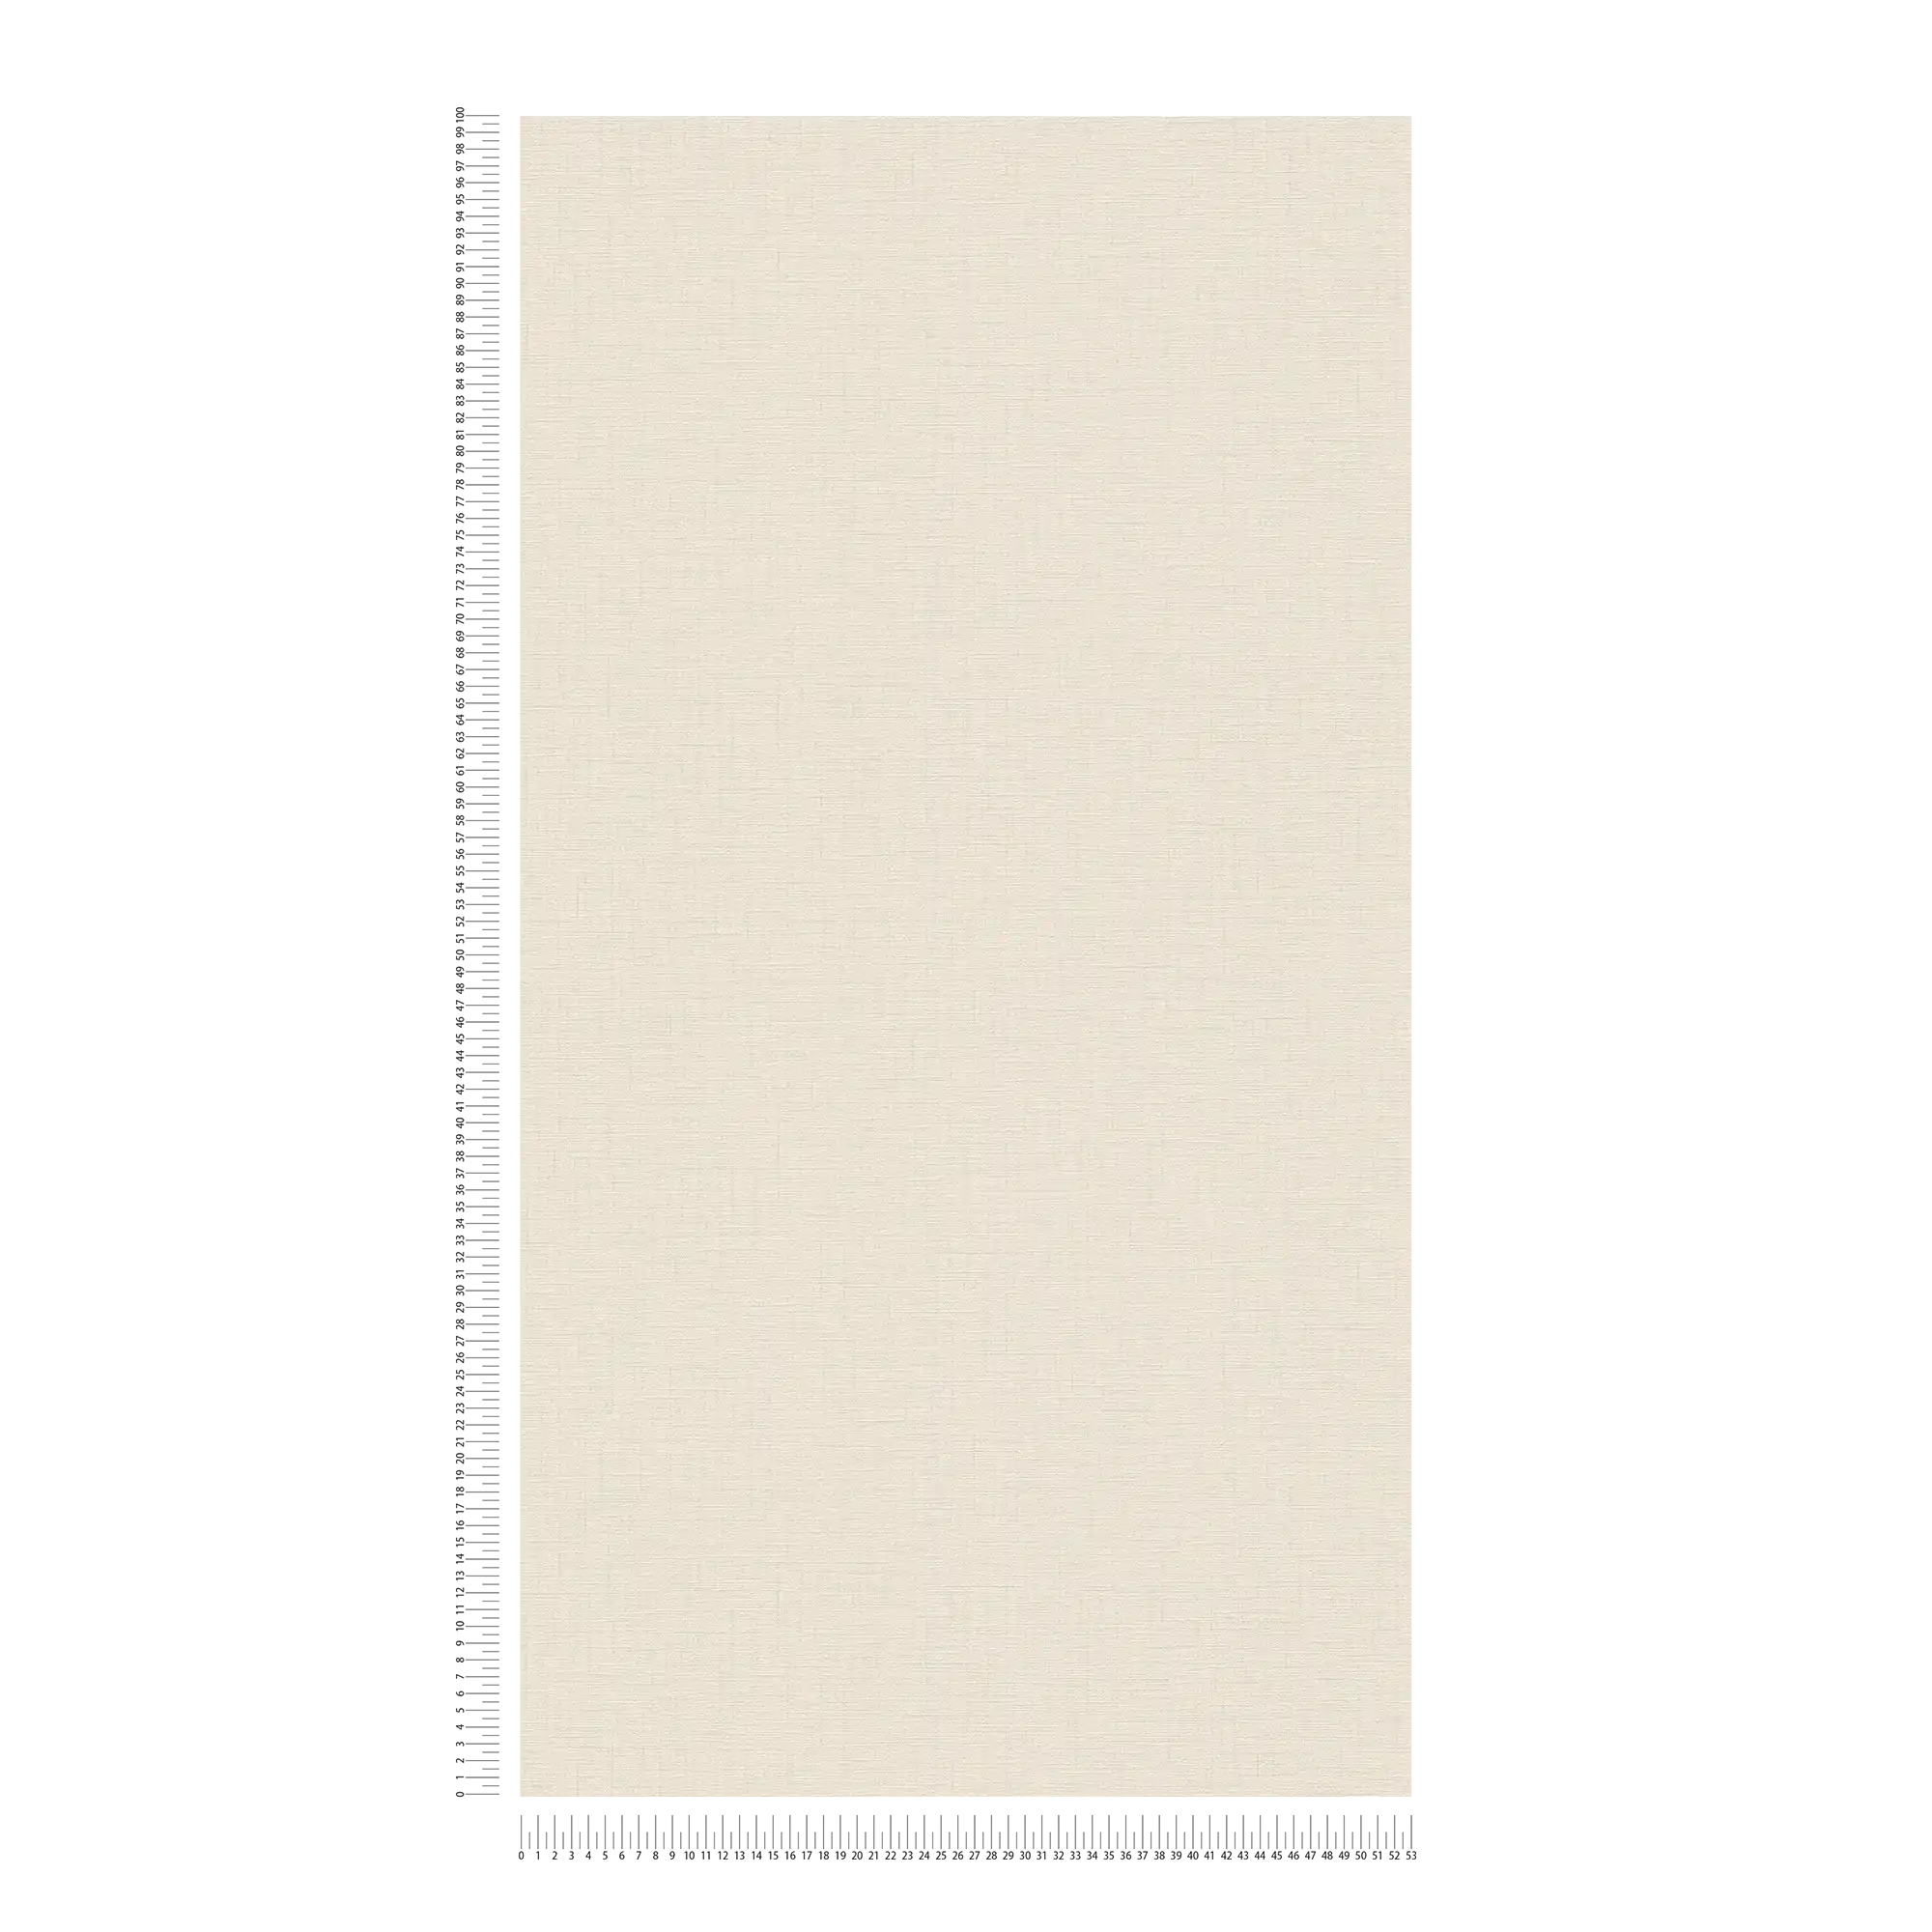             Papier peint beige clair uni chiné avec structure lin
        